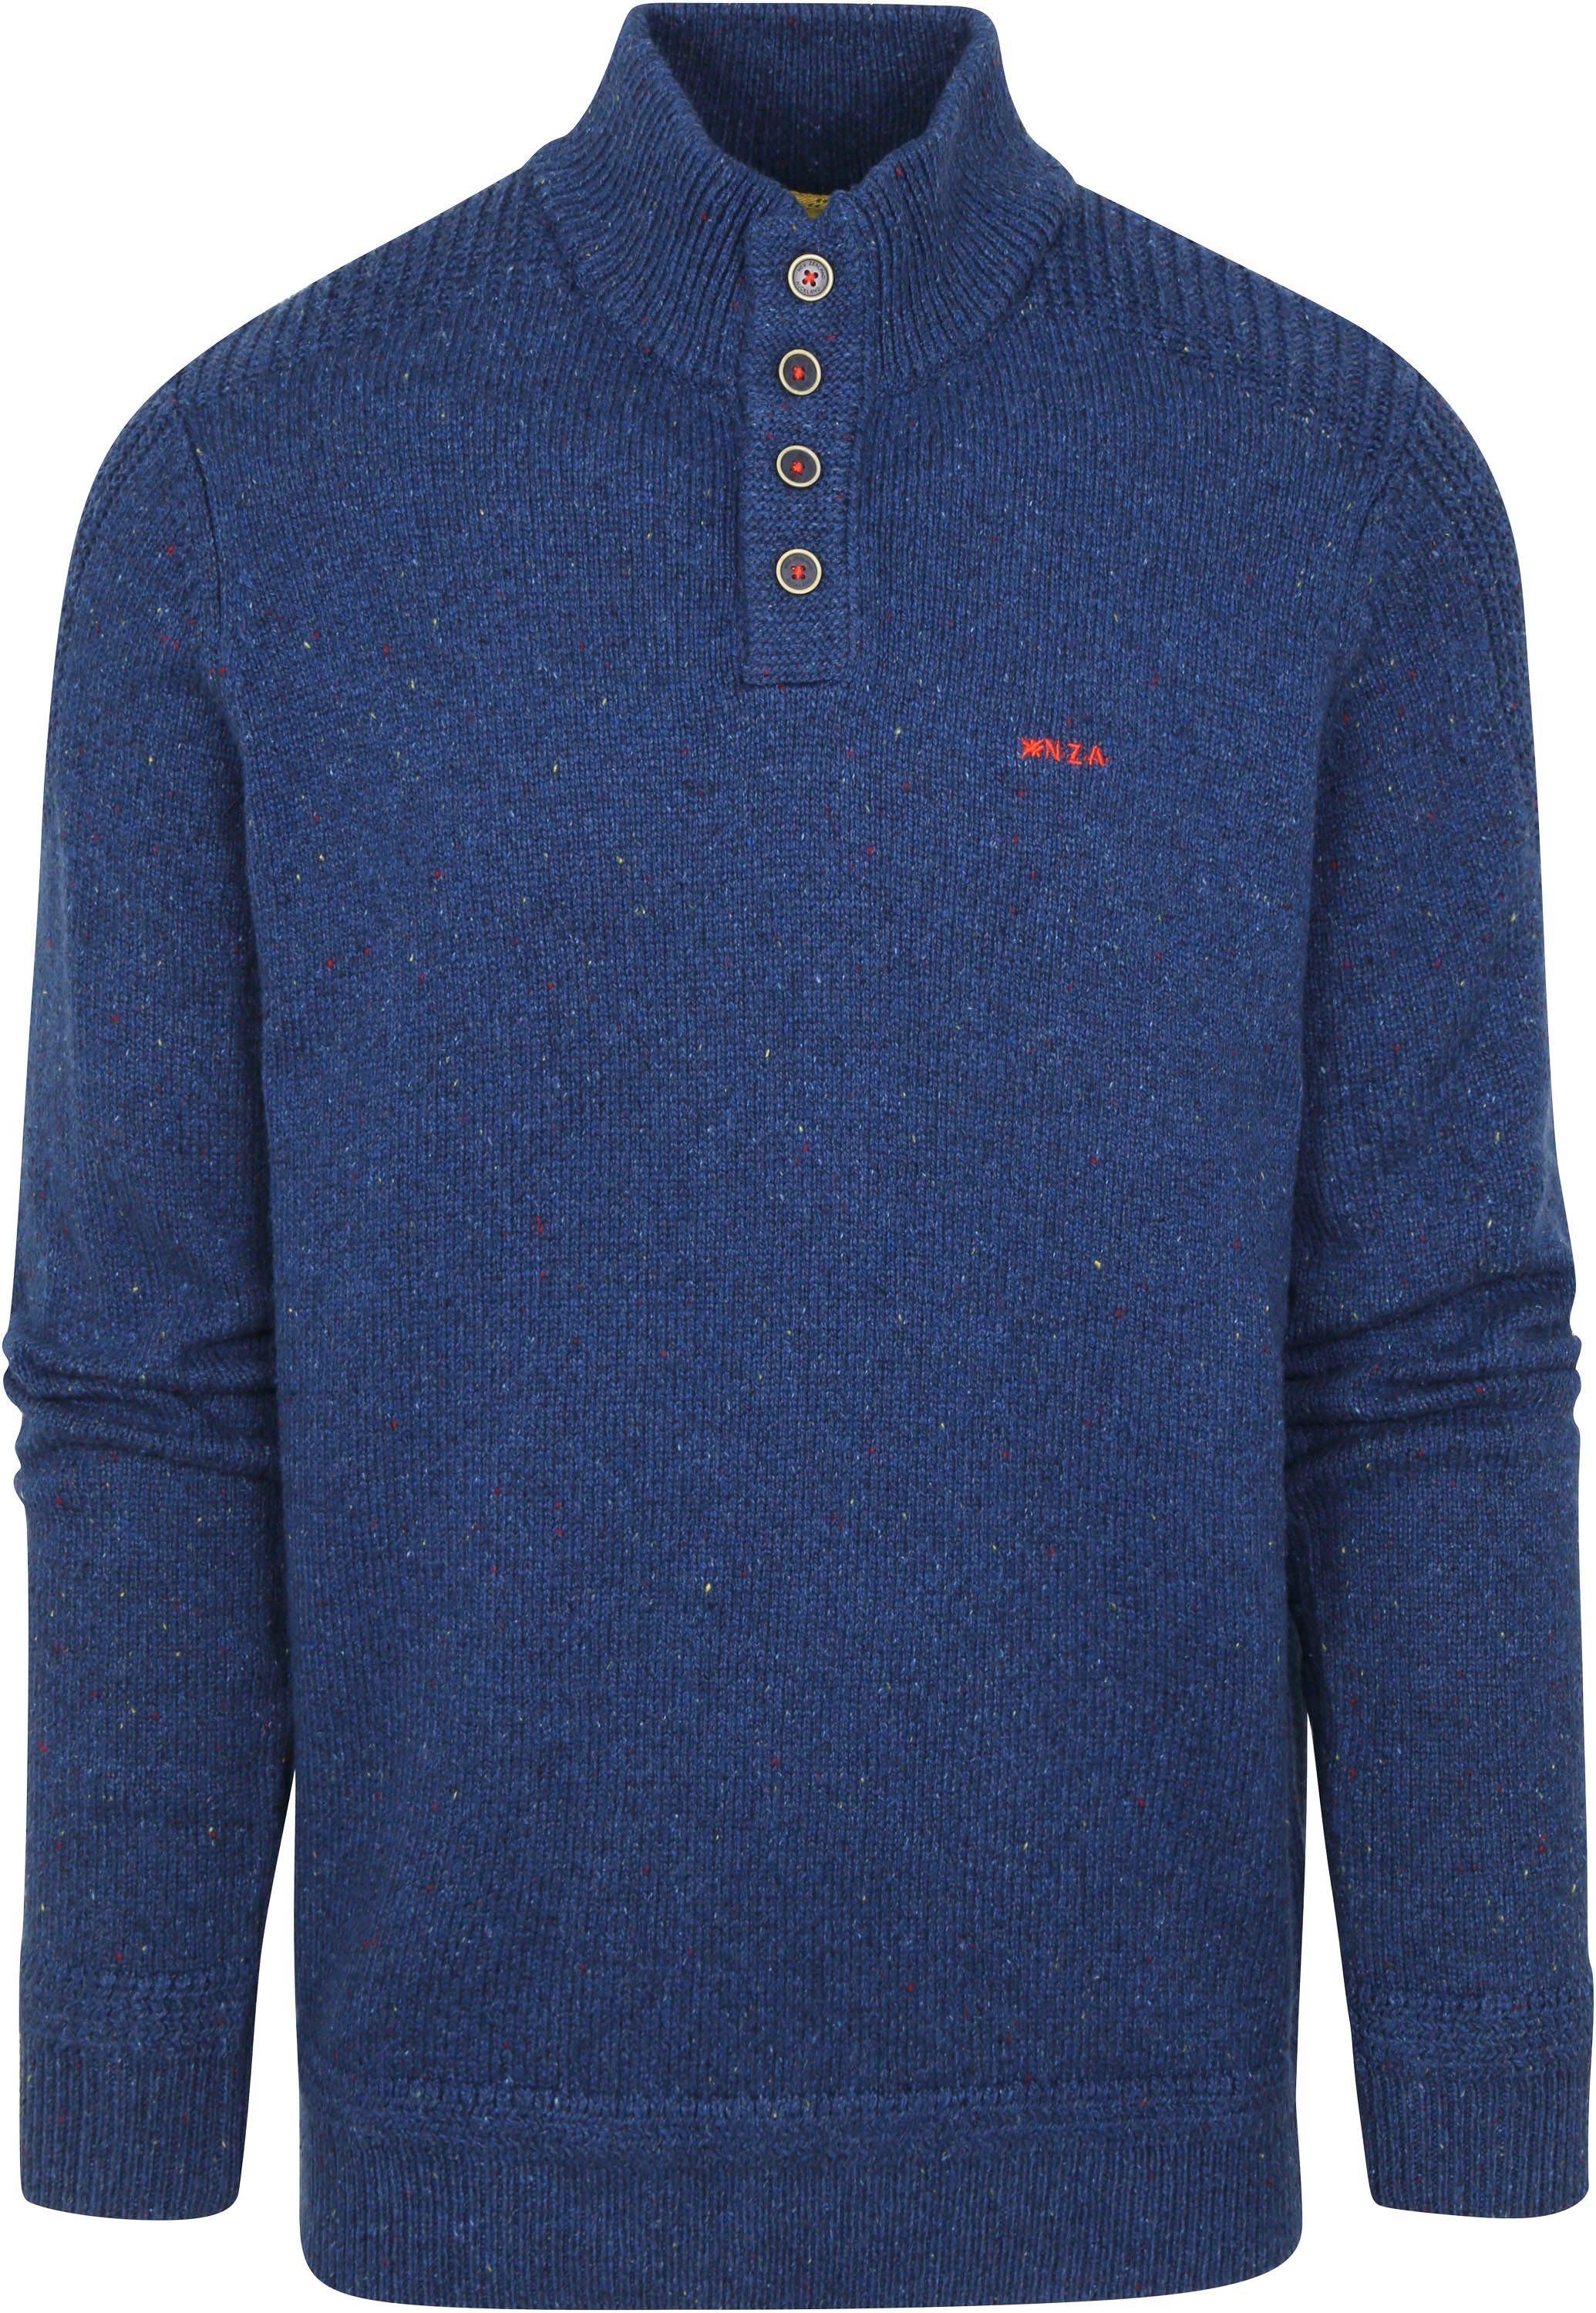 NZA Sweater Brownlee Cobalt Blue Dark Blue size 3XL